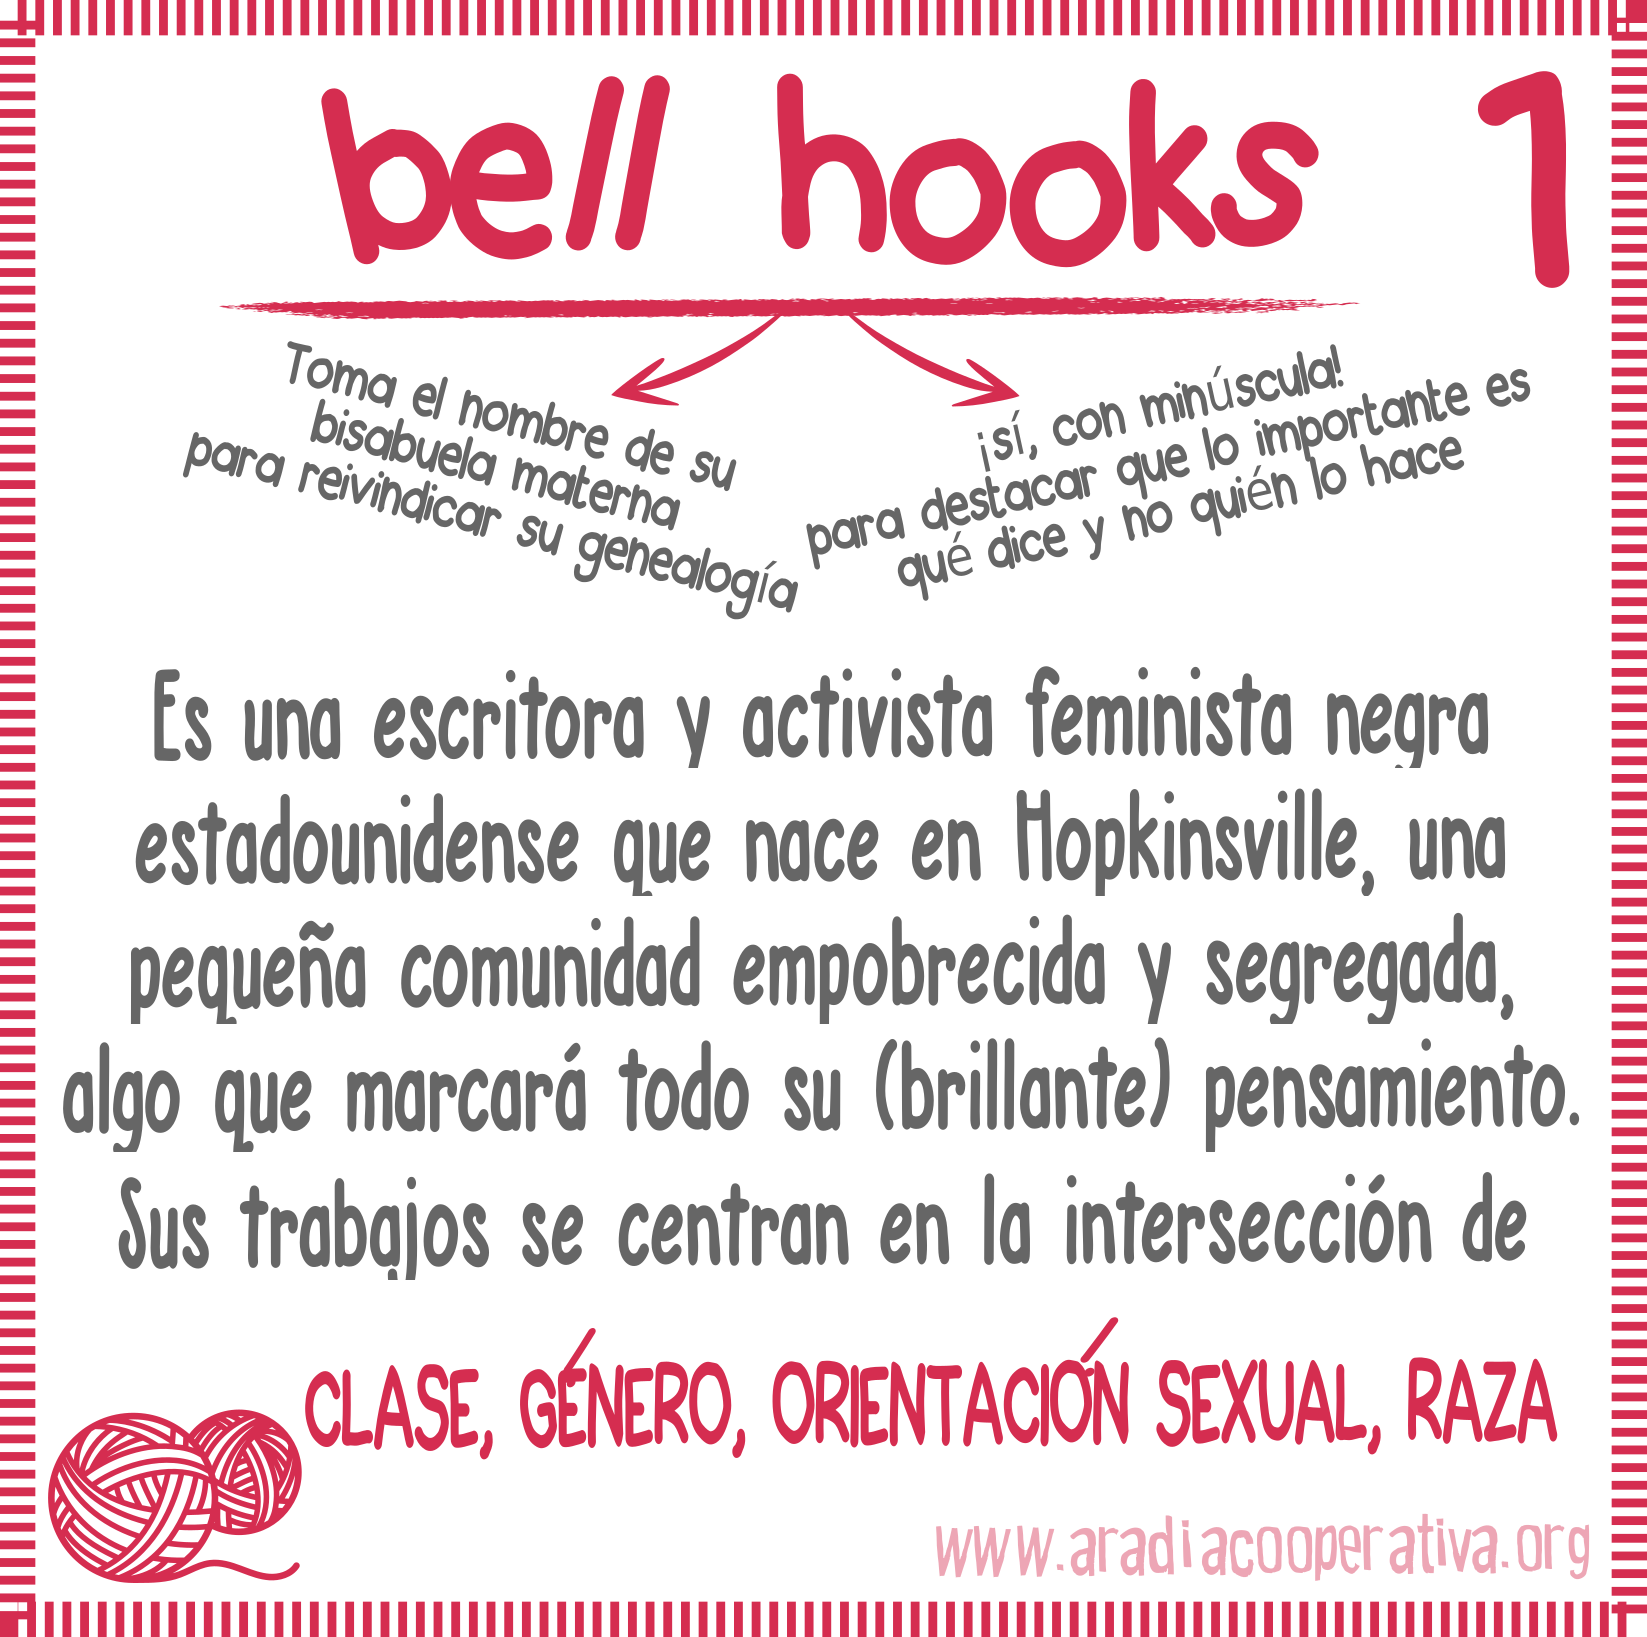 1. bell hooks